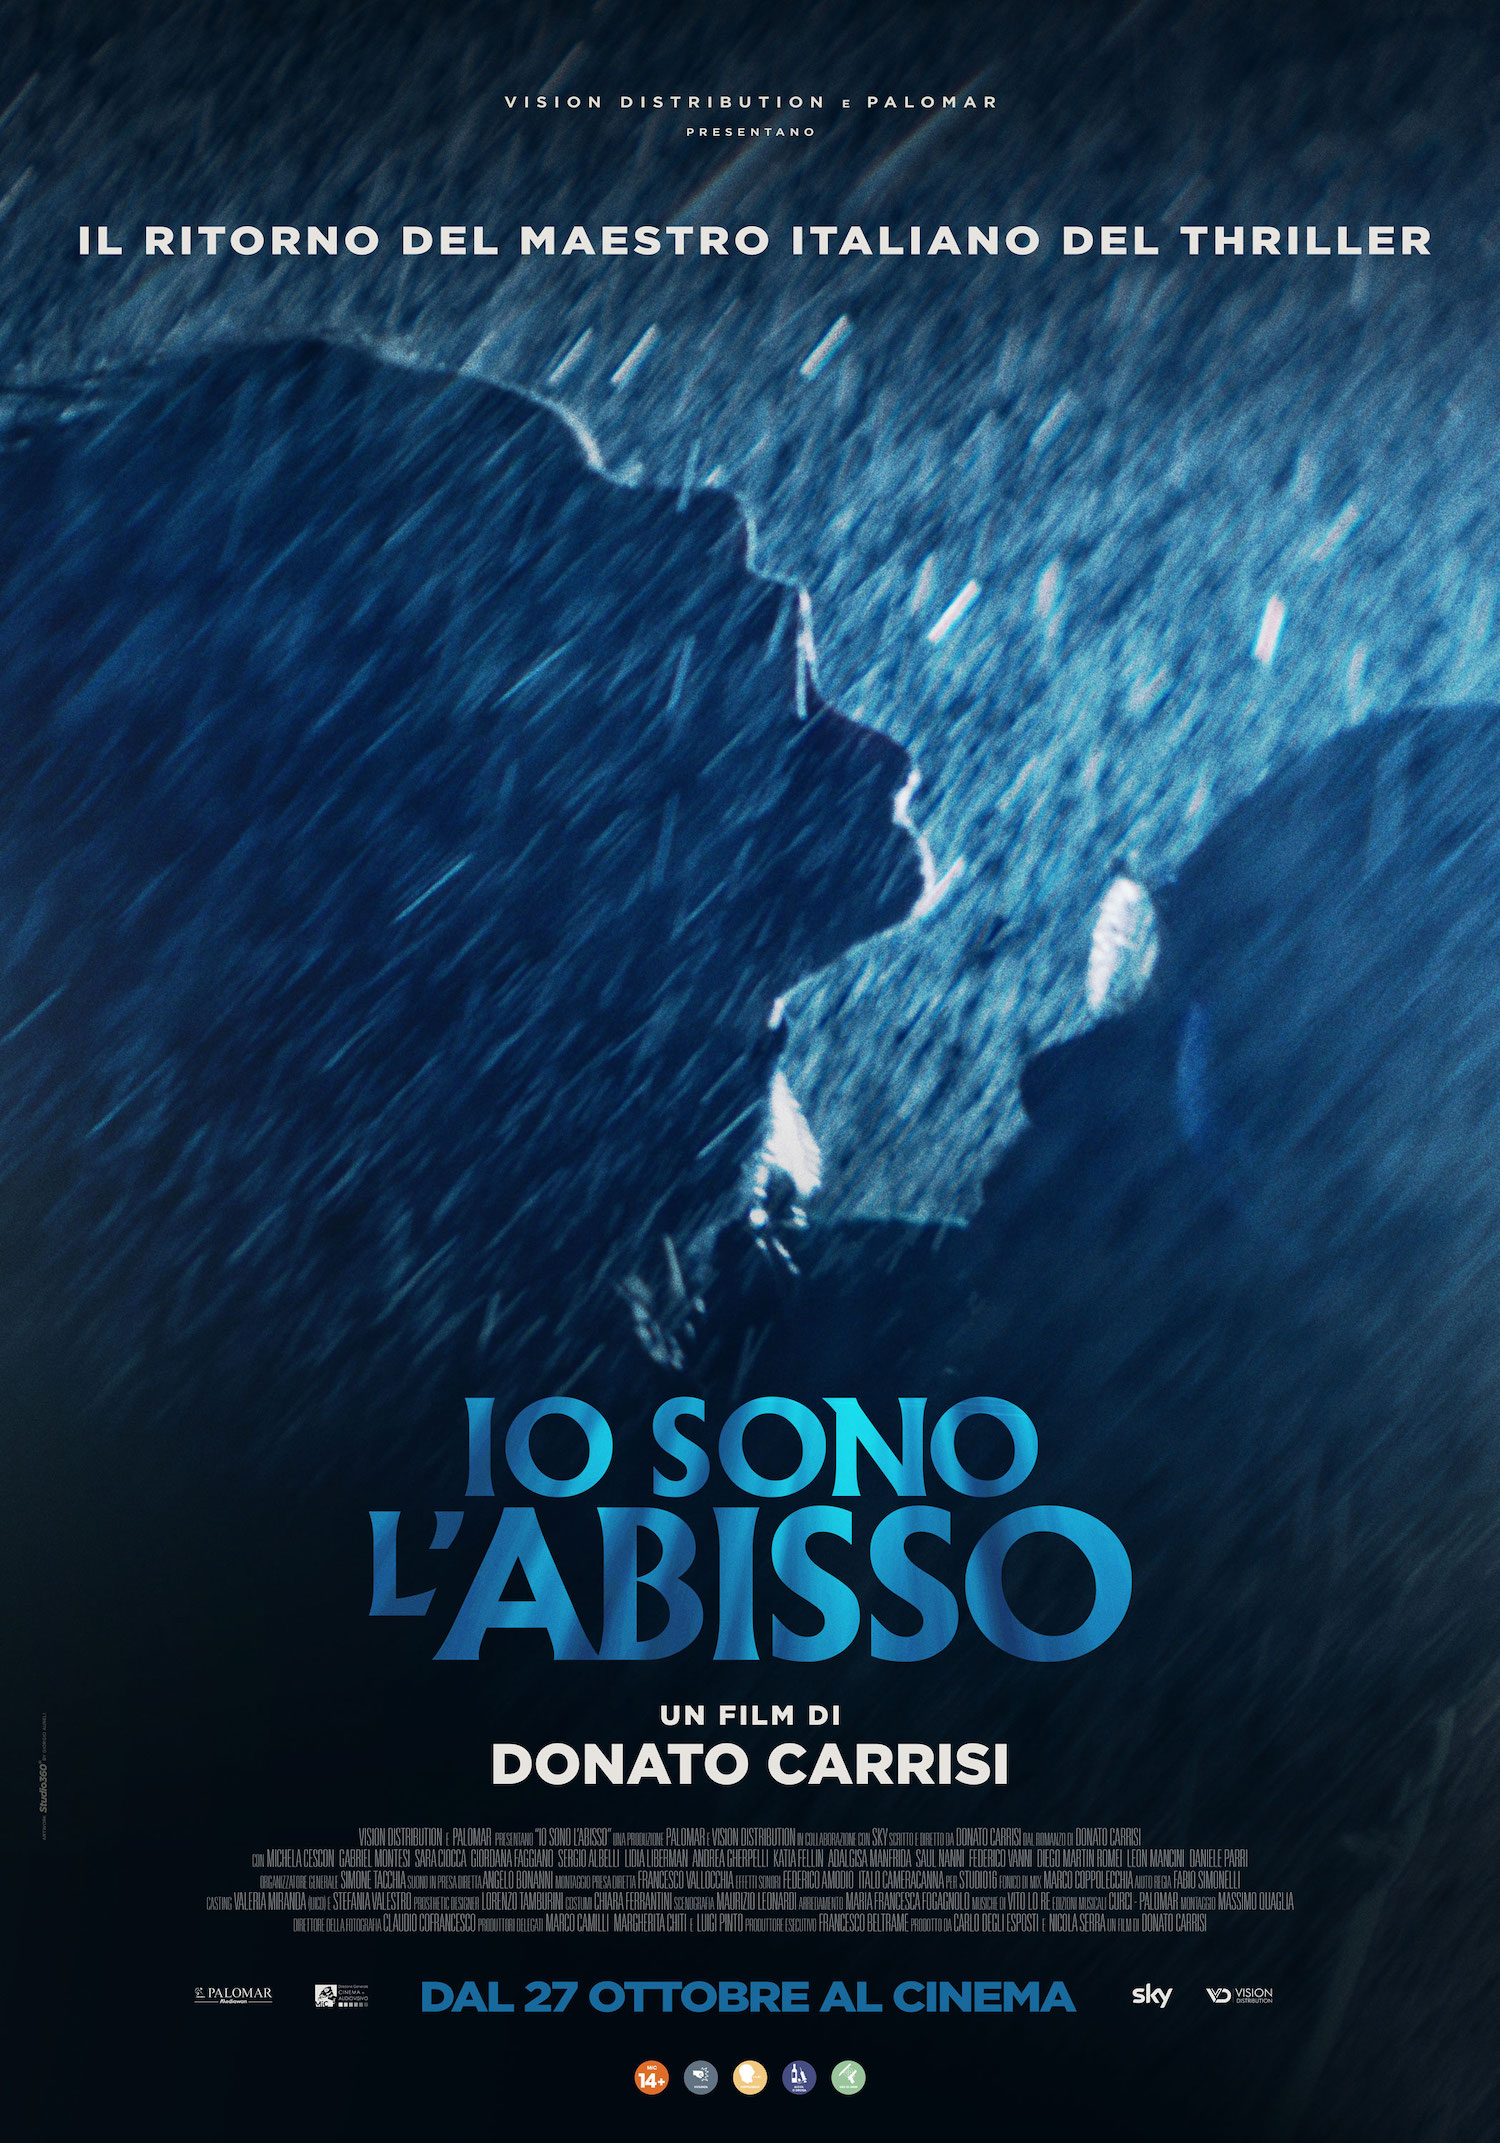 Il poster del film Io sono l'abisso di Donato Carrisi